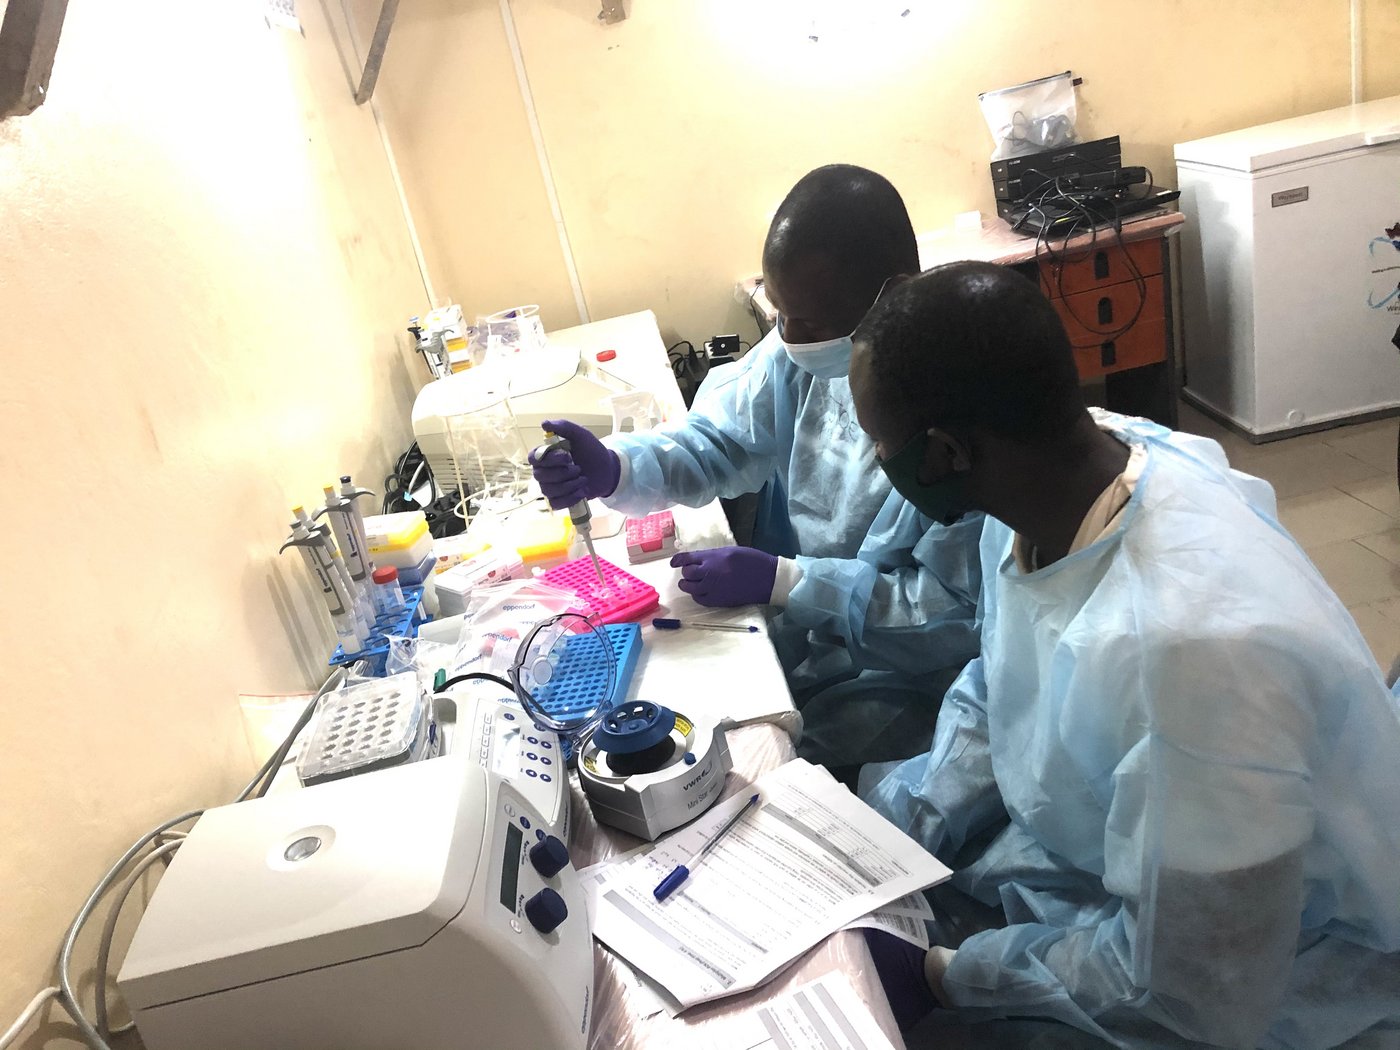 [Translate to English:] Das Bild zeigt zwei afrikanische Forschende in einer Laborsituation